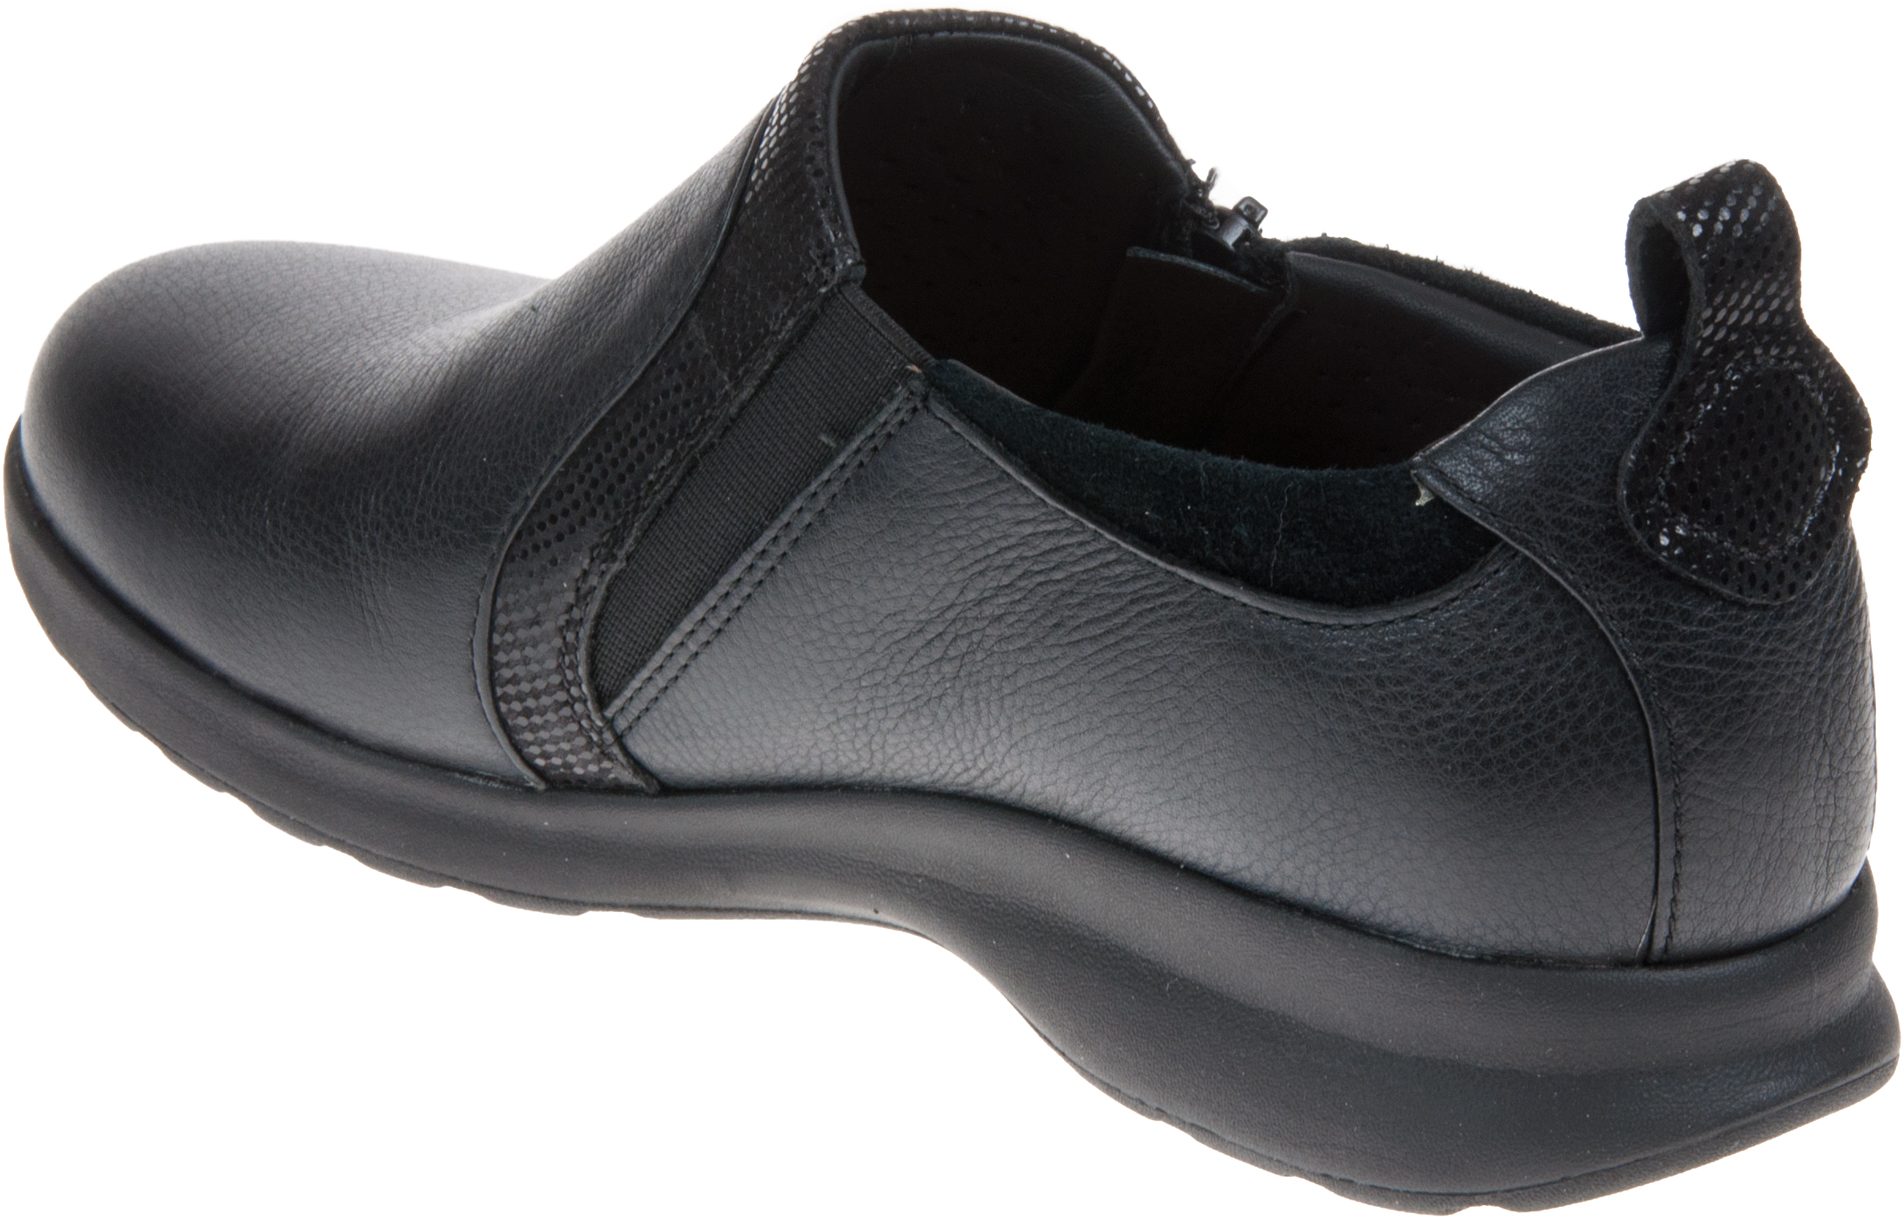 Clarks Un Adorn Zip Black Combi 26137017 - Everyday Shoes - Humphries Shoes